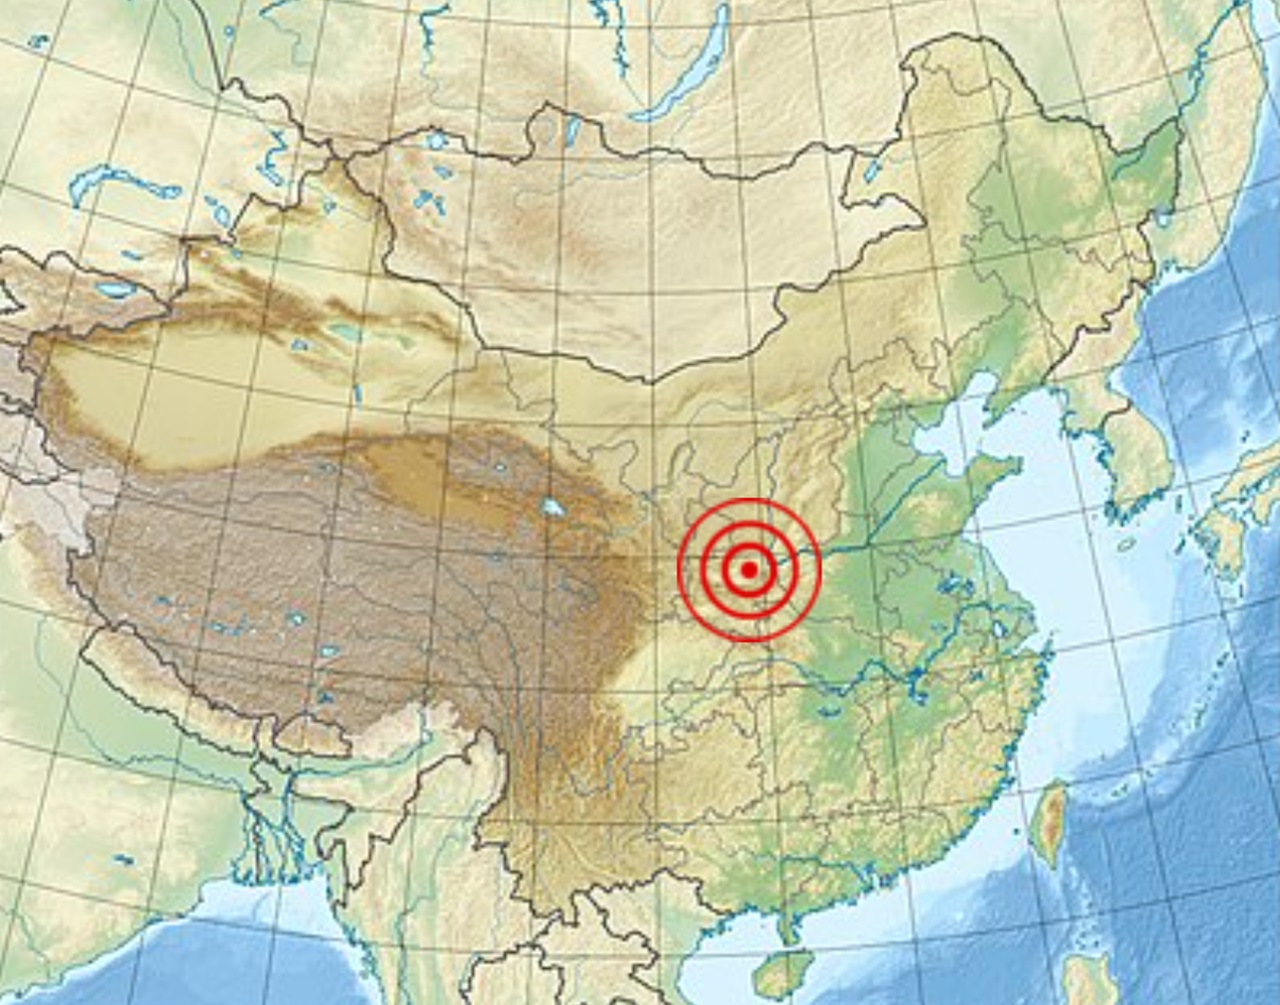 terremoto di Jiajing immagine epicentro stimato